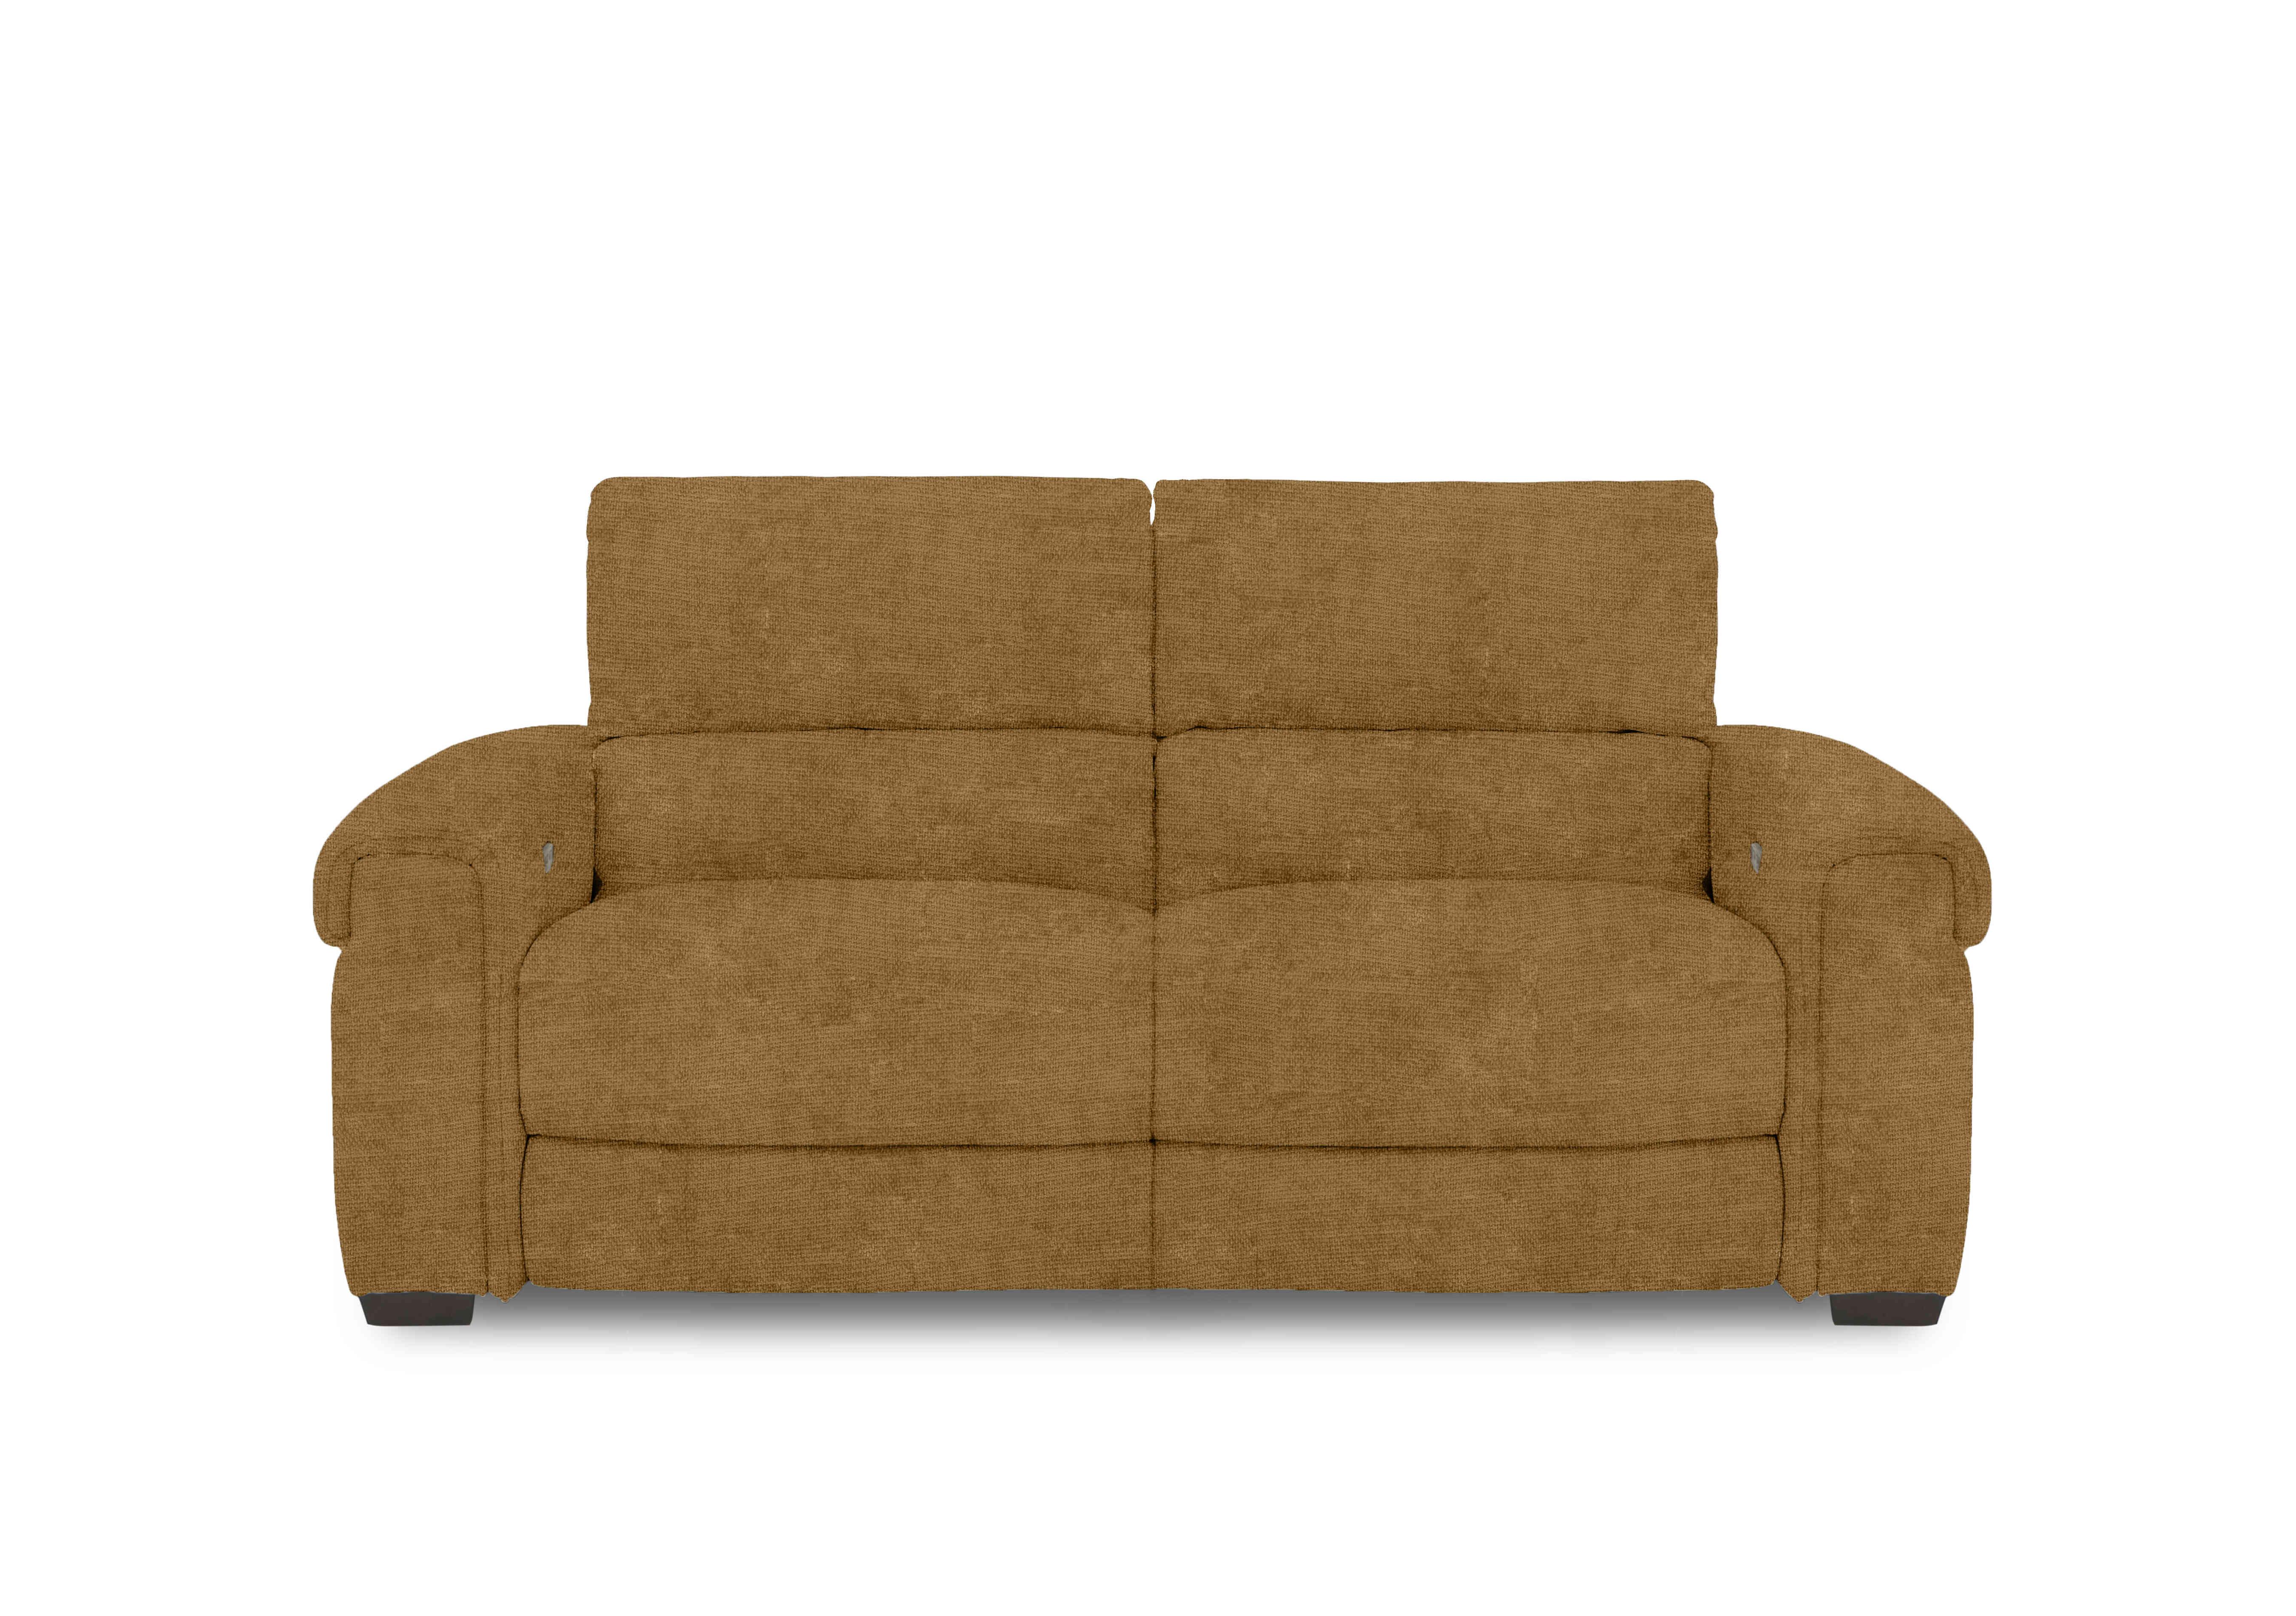 Nixon Fabric 3 Seater Sofa in Fab-Coe-R272 Honey Yellow on Furniture Village